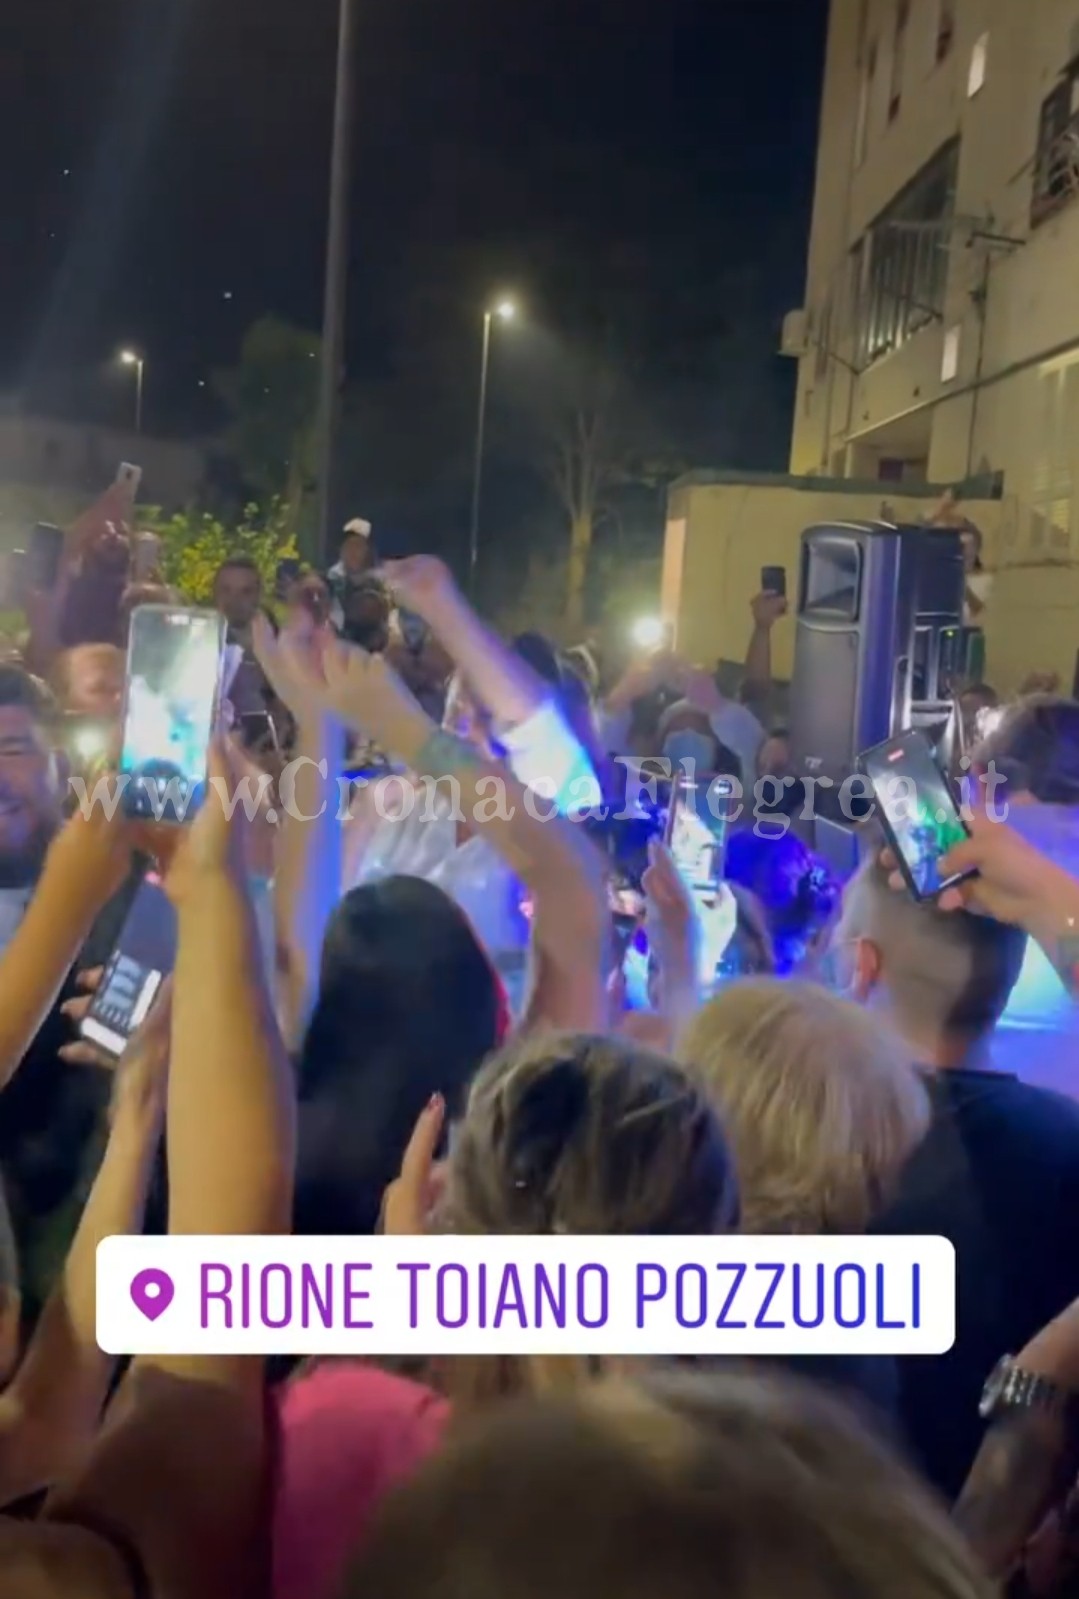 POZZUOLI/ Feste abusive al Rione Toiano: denunciata Rita De Crescenzo. Multati i neomelodici